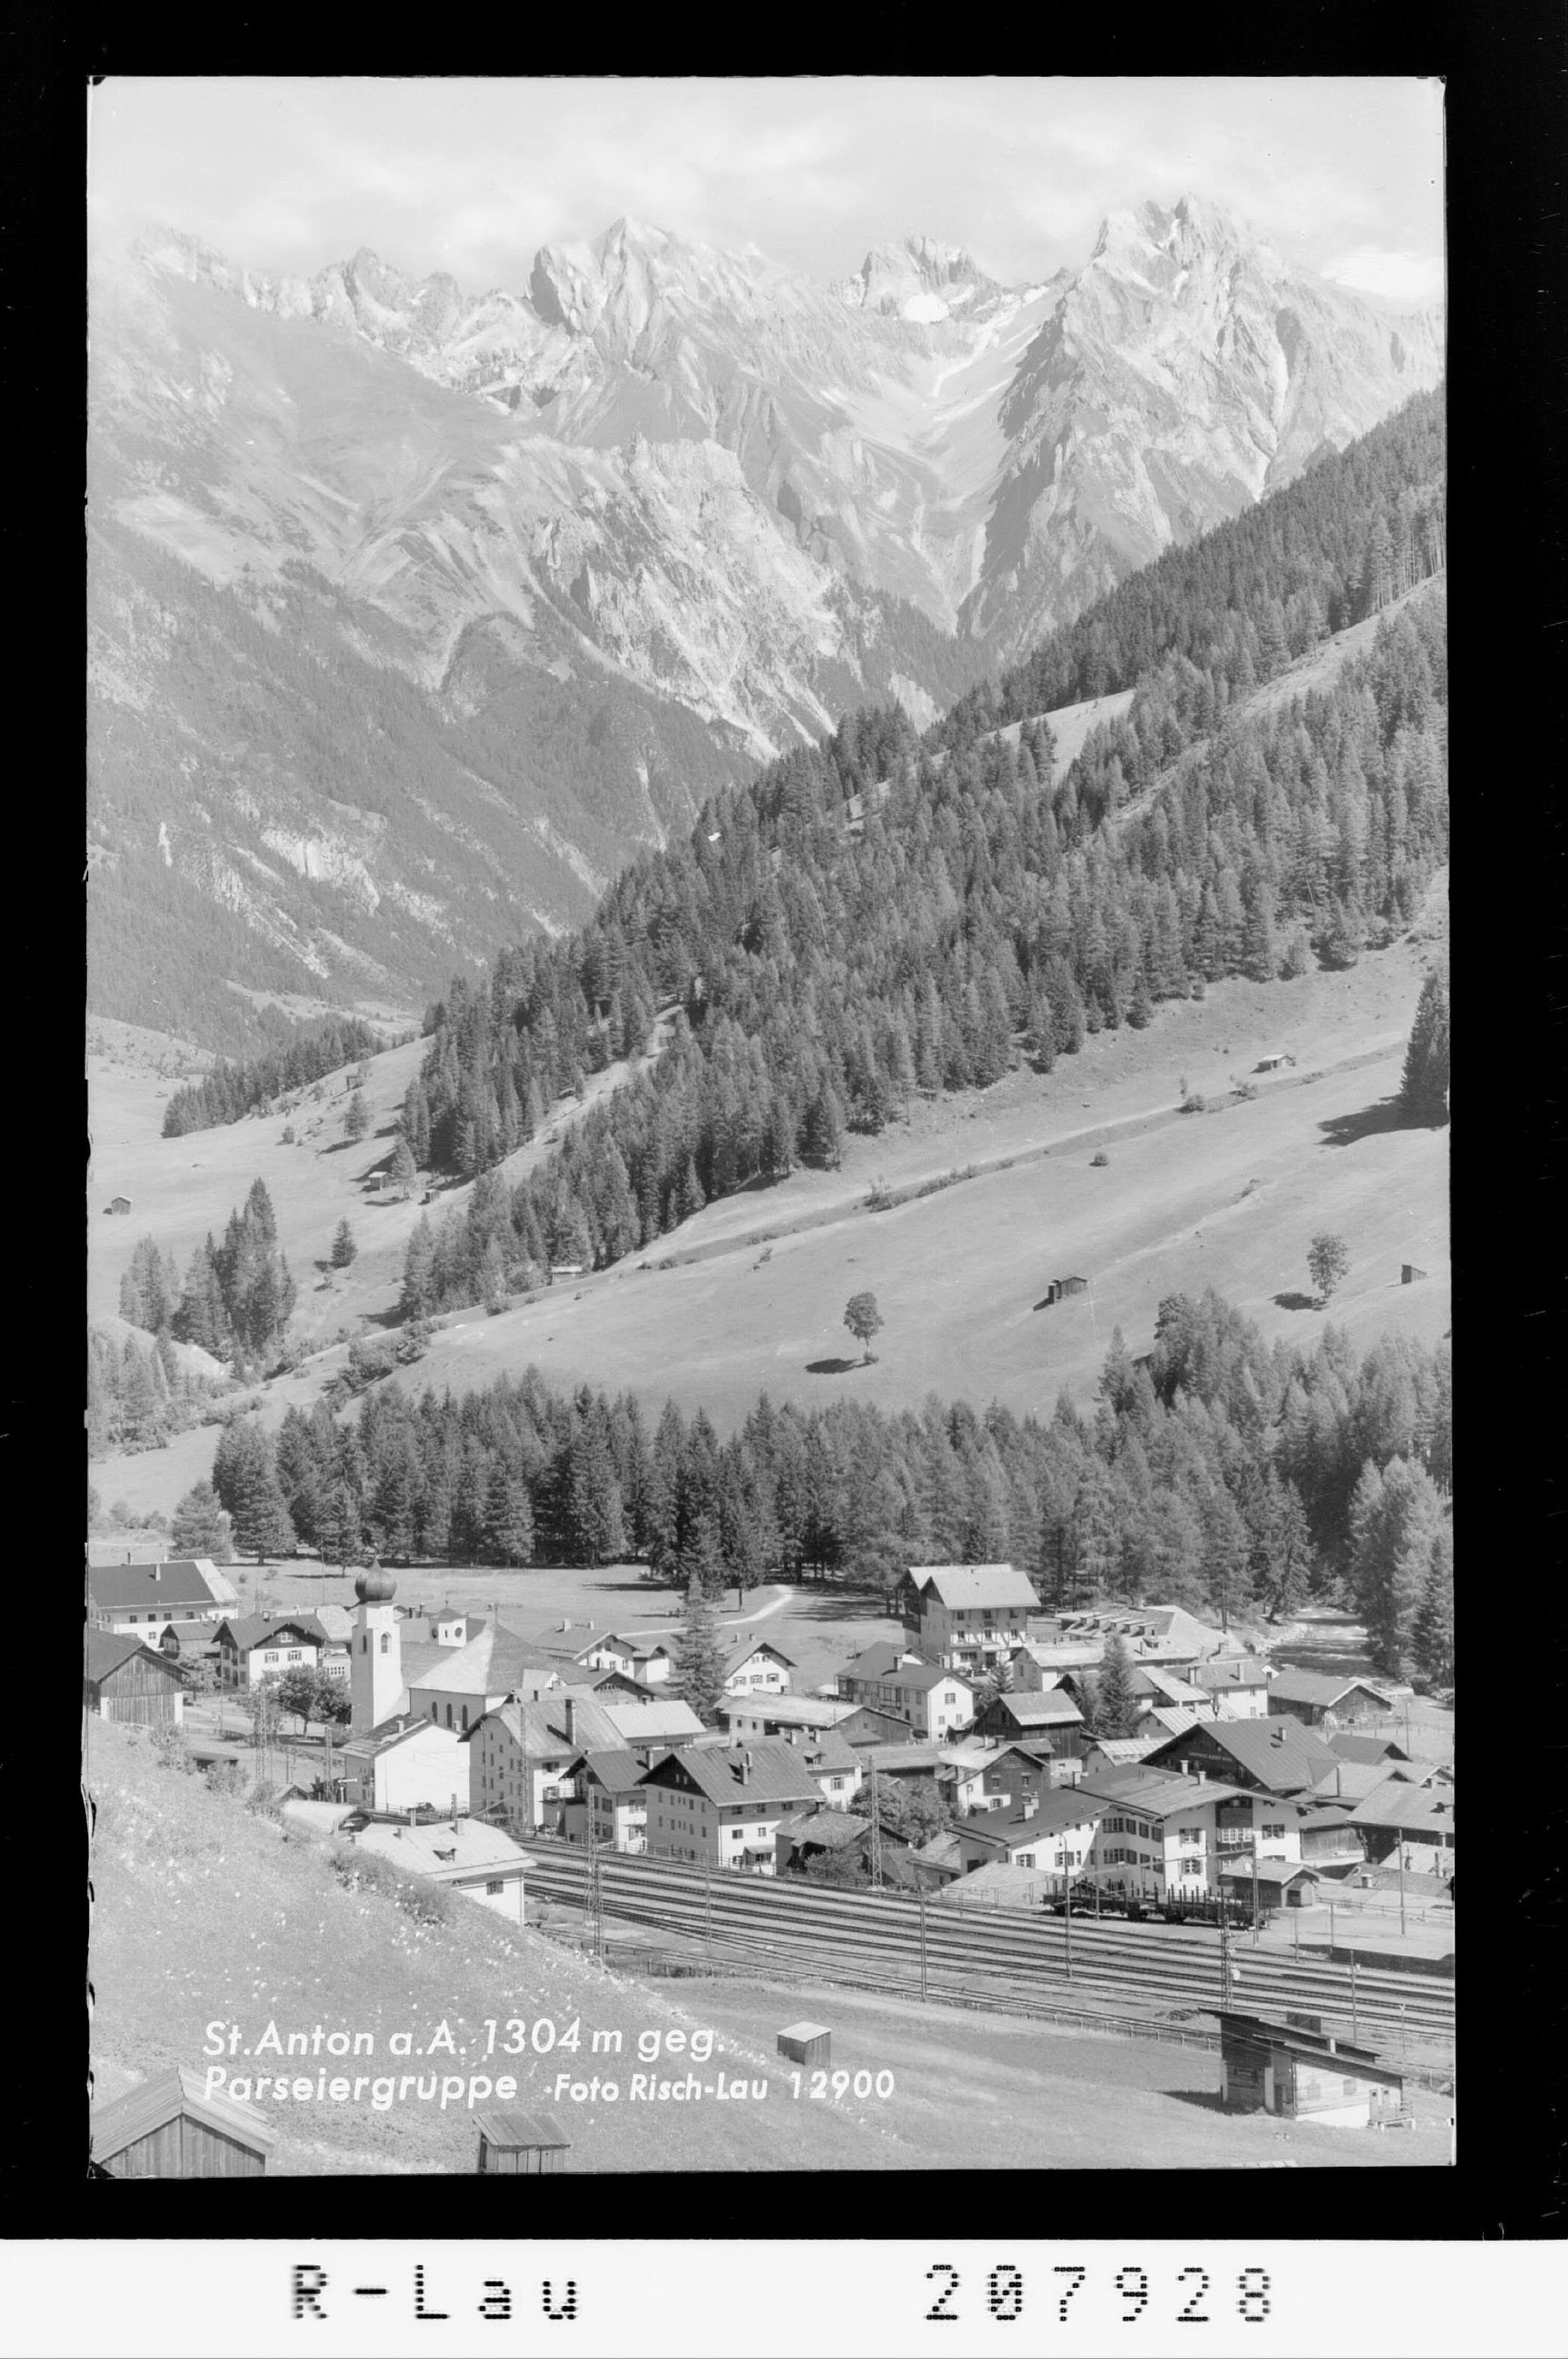 St.Anton am Arlberg 1304 m gegen Parseiergruppe></div>


    <hr>
    <div class=